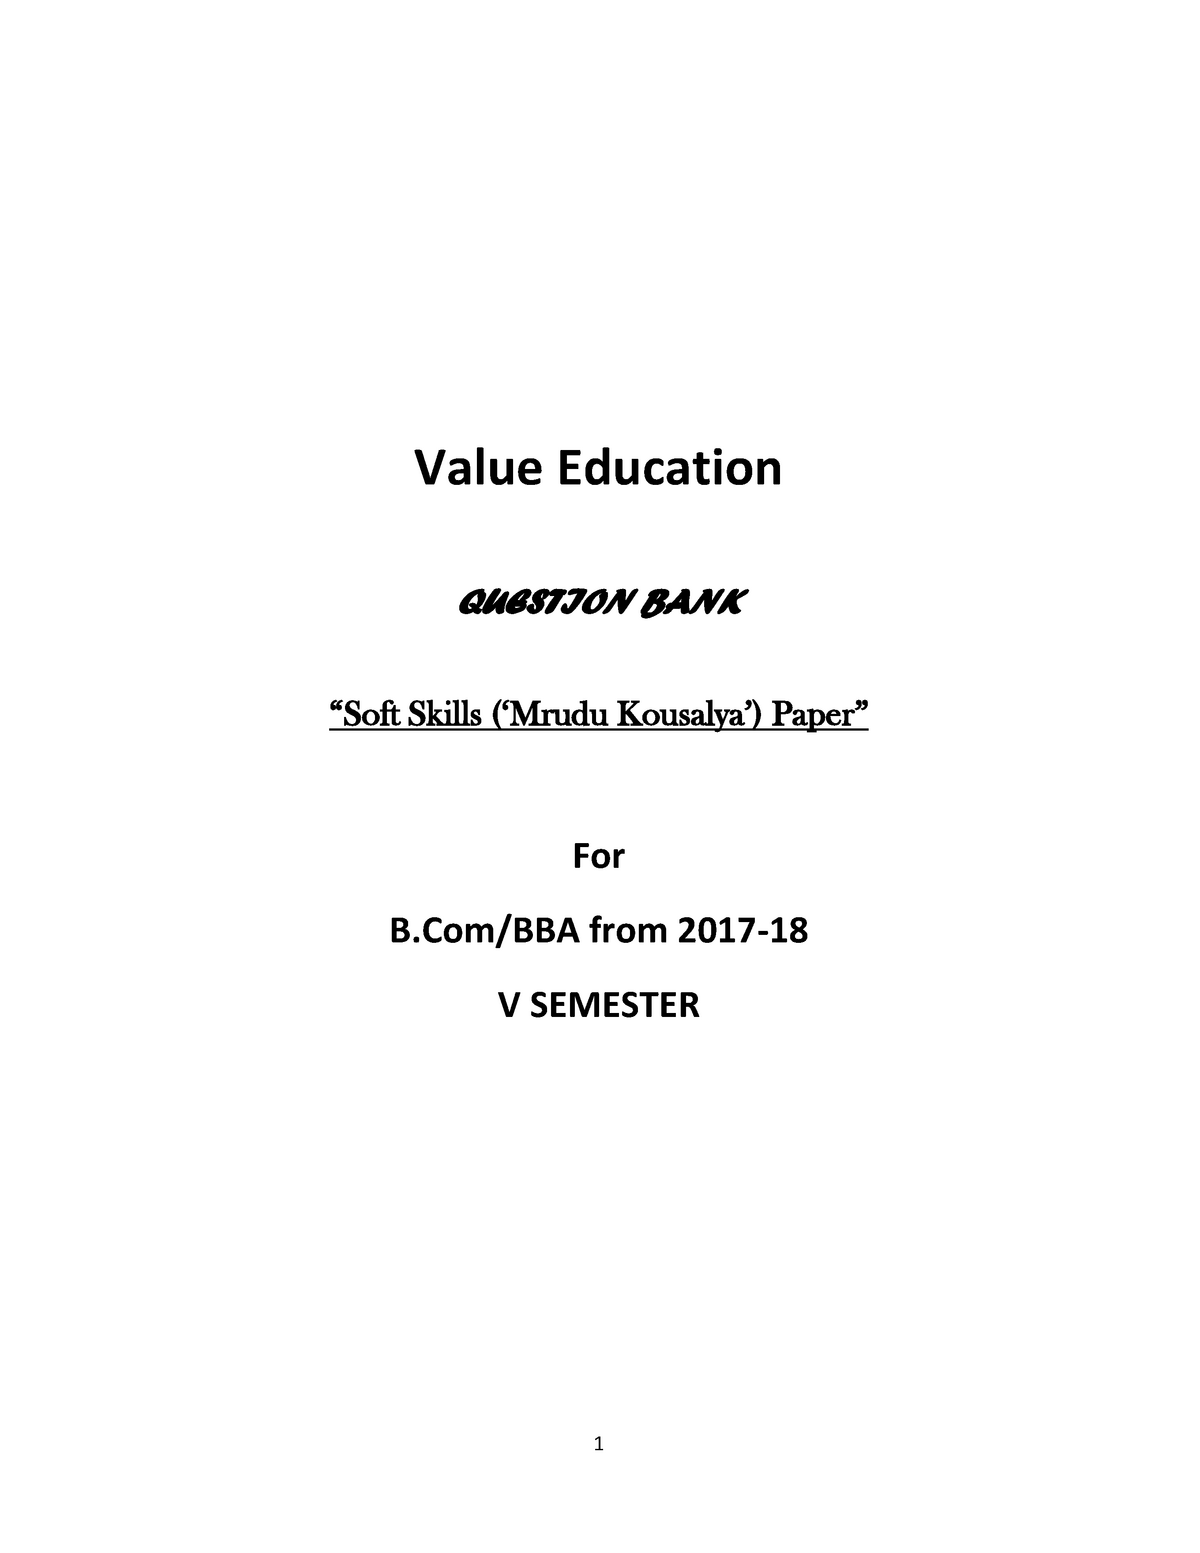 value education question paper bangalore university